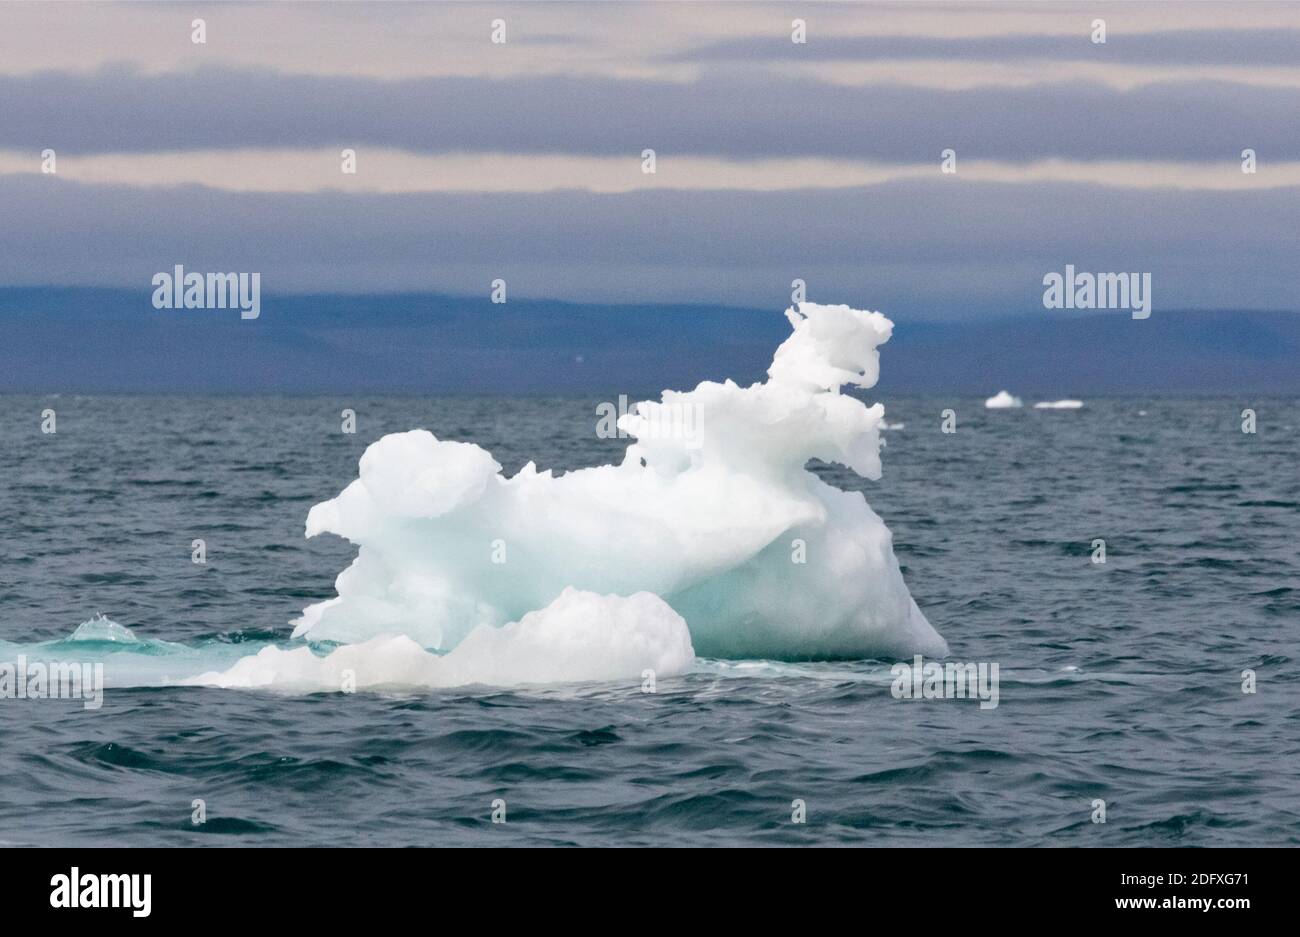 L'île Wrangel, iceberg flottant dans la mer de Chukchi, Extrême-Orient russe Banque D'Images